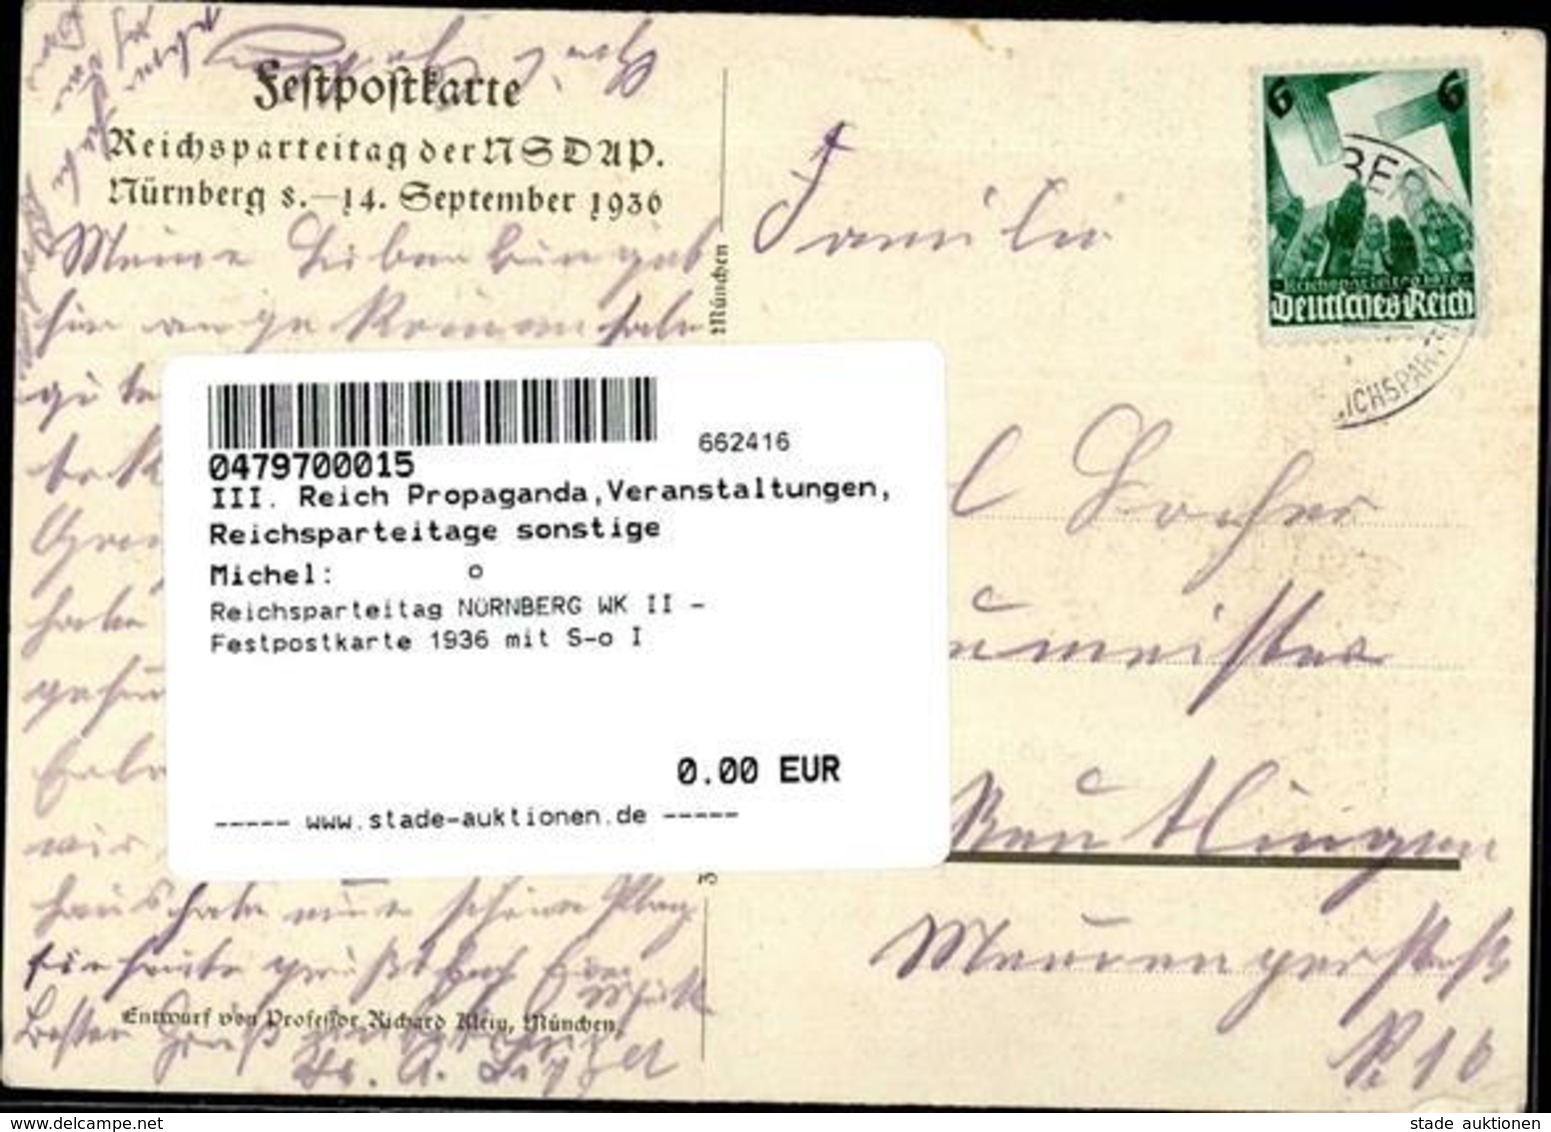 Reichsparteitag NÜRNBERG WK II - Festpostkarte 1936 Mit S-o I - Guerra 1939-45